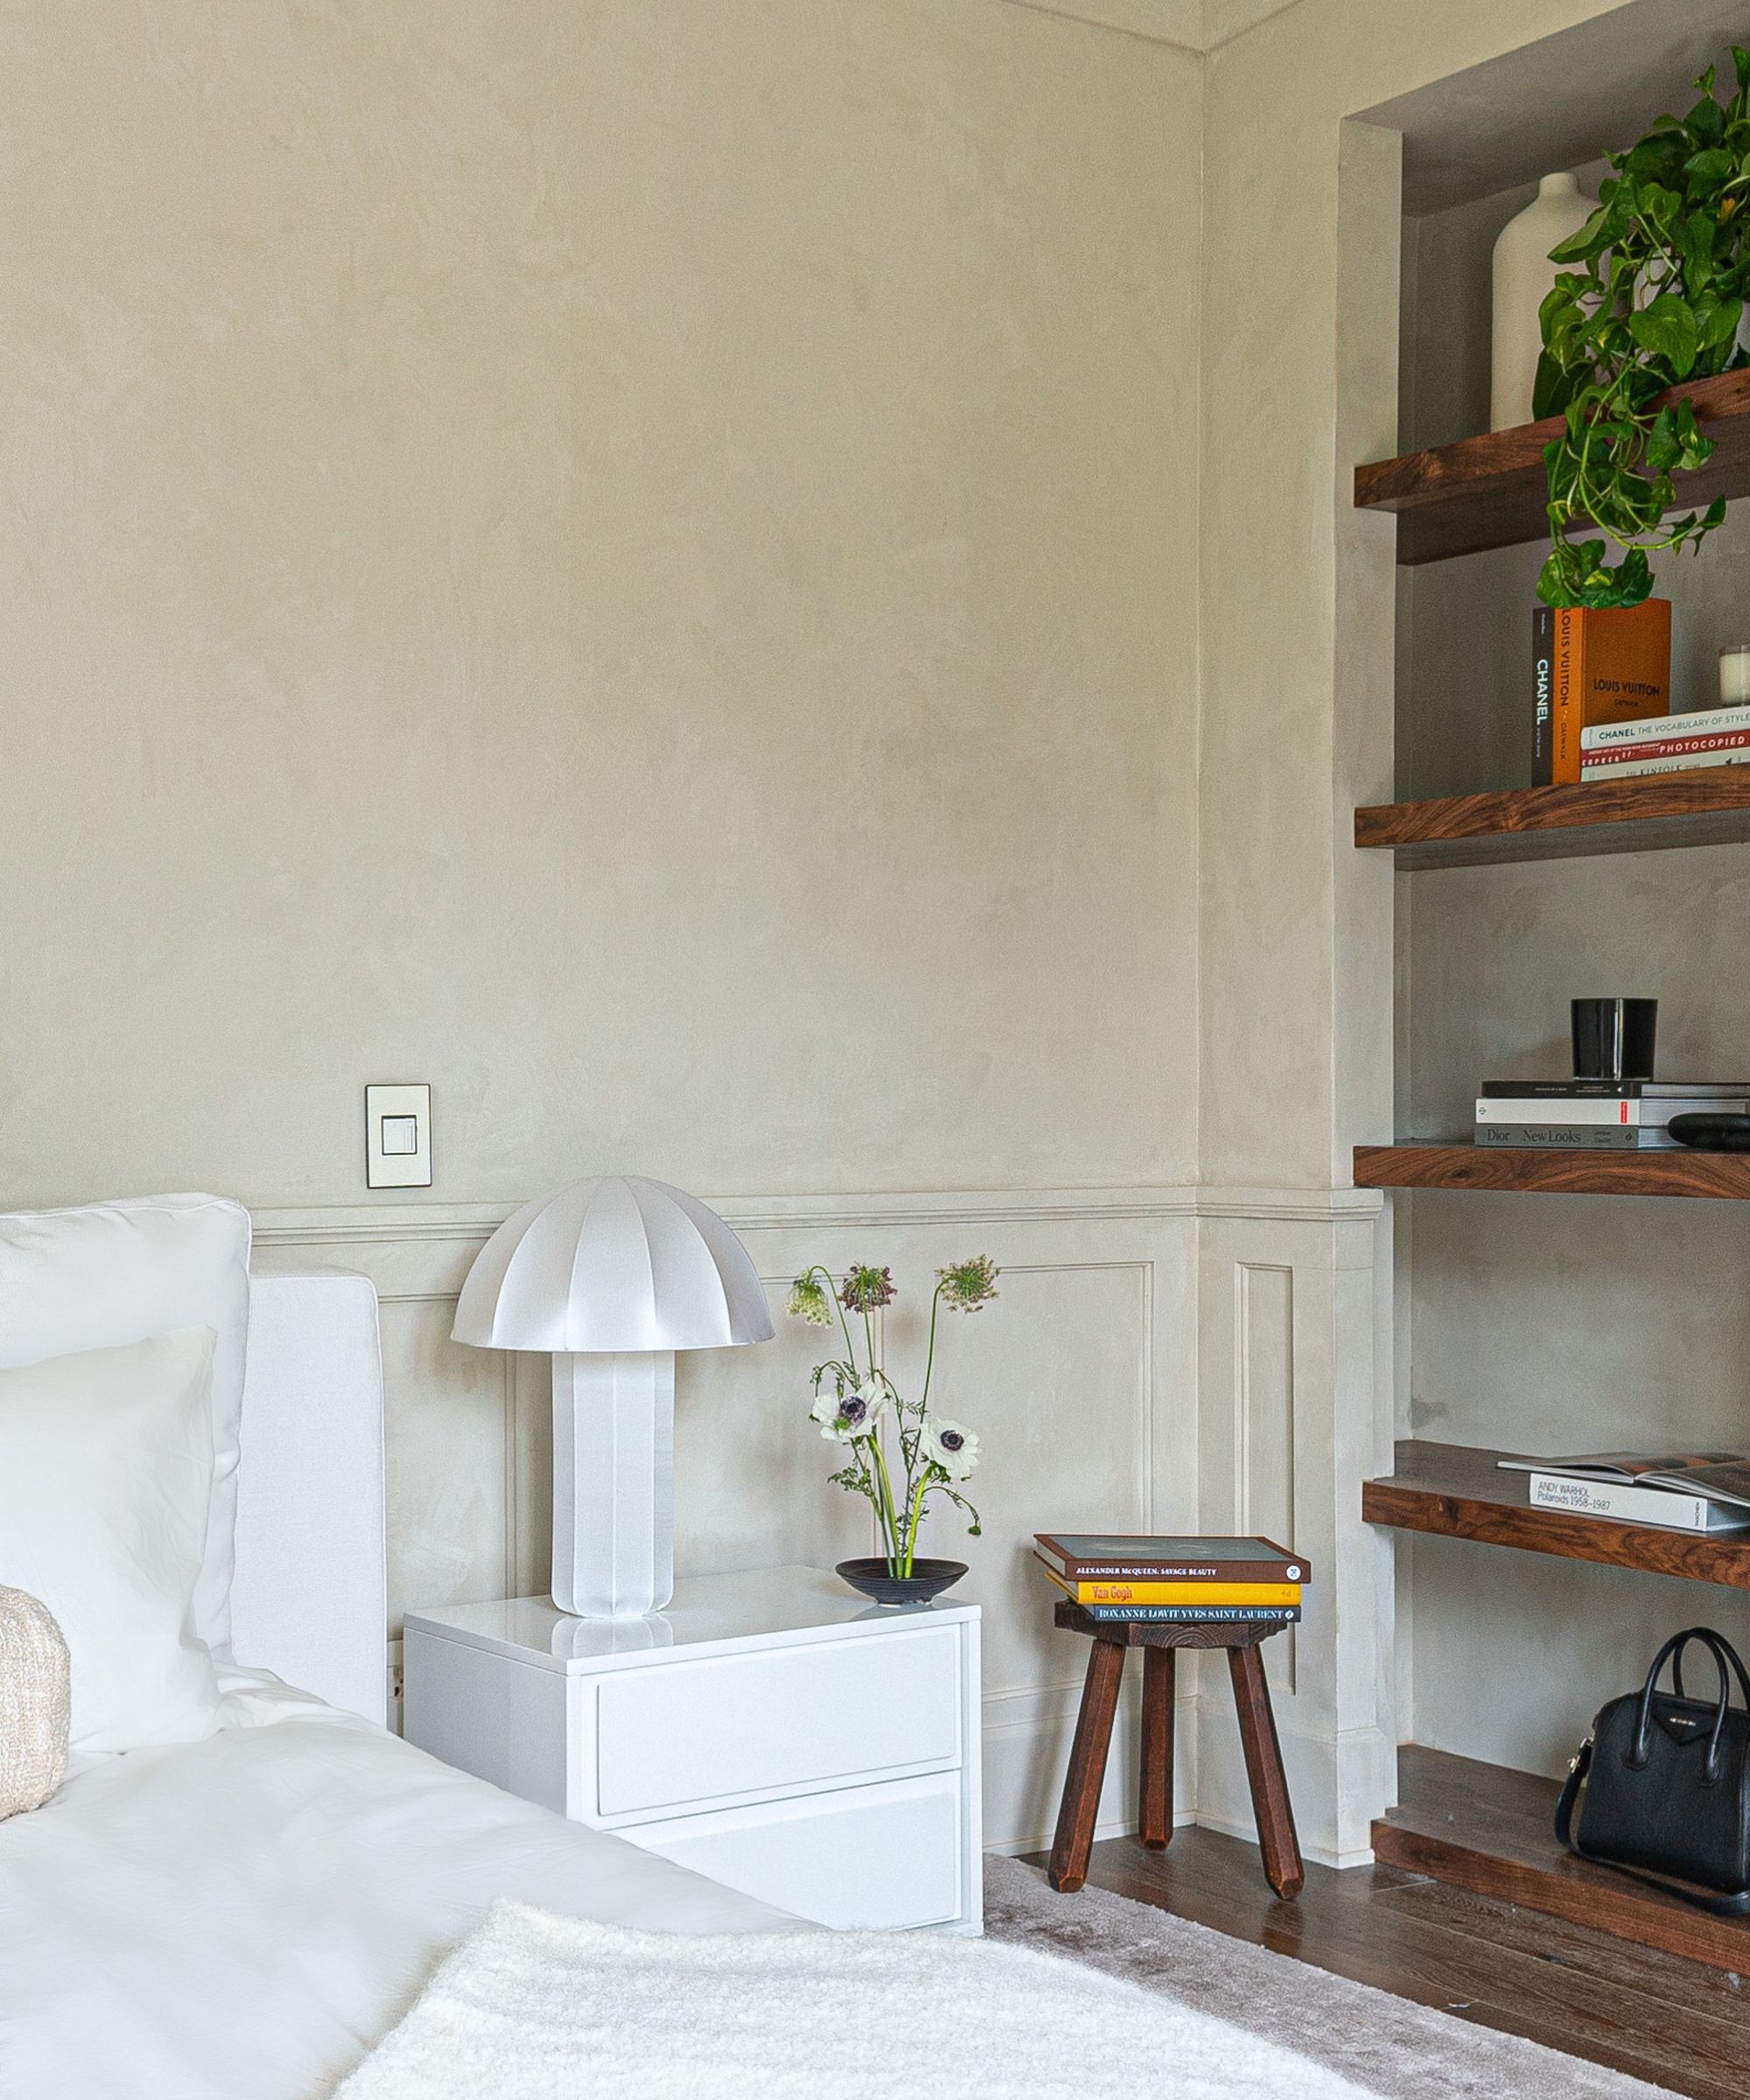 Inbuilt shelves, wooden floor, white lamp